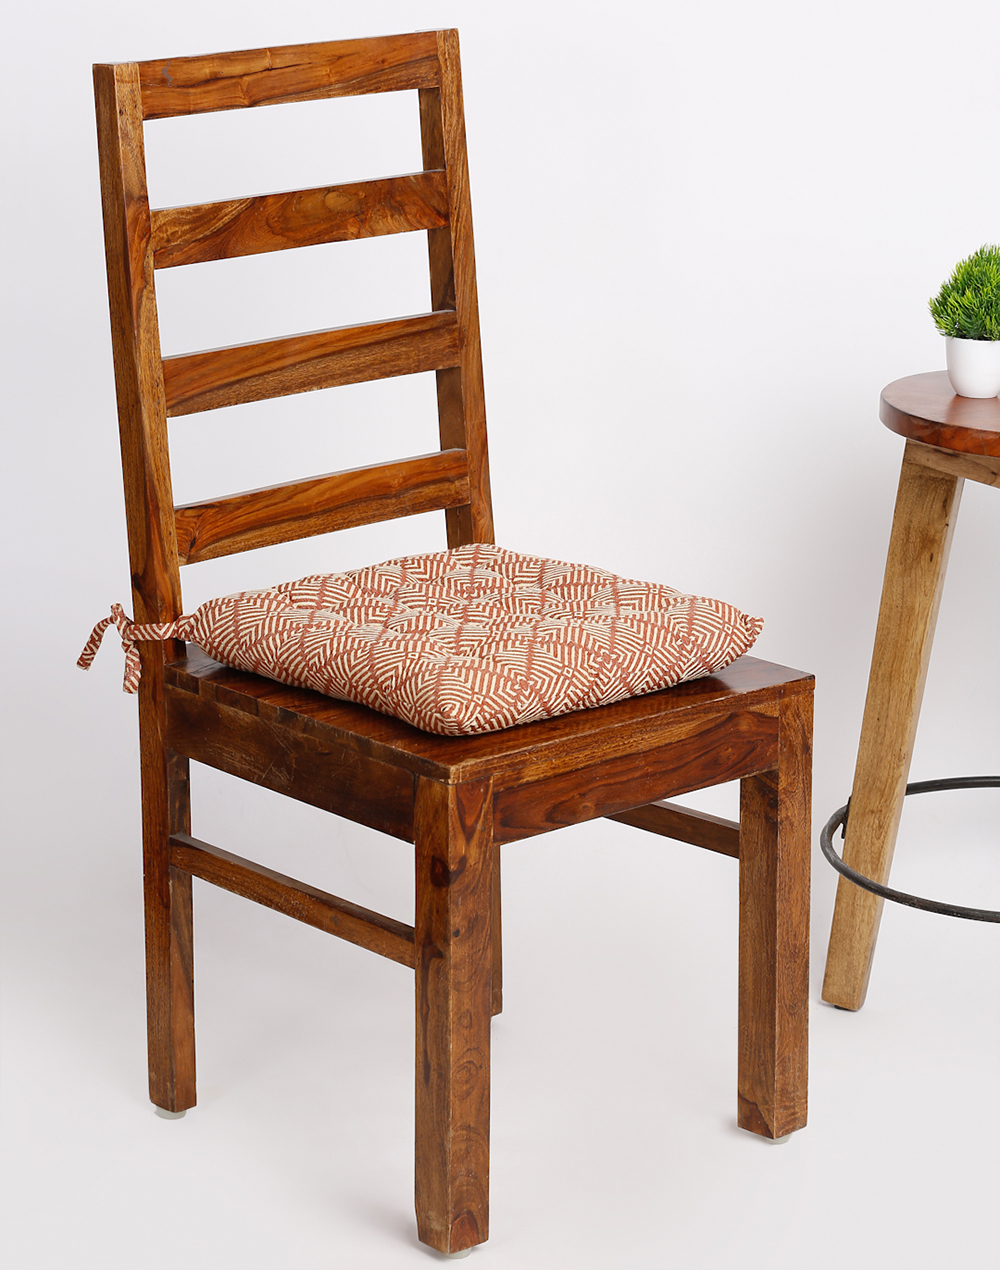 Buy Vatika Nilaya Cotton Woven Chair Pad Online at Fabindia